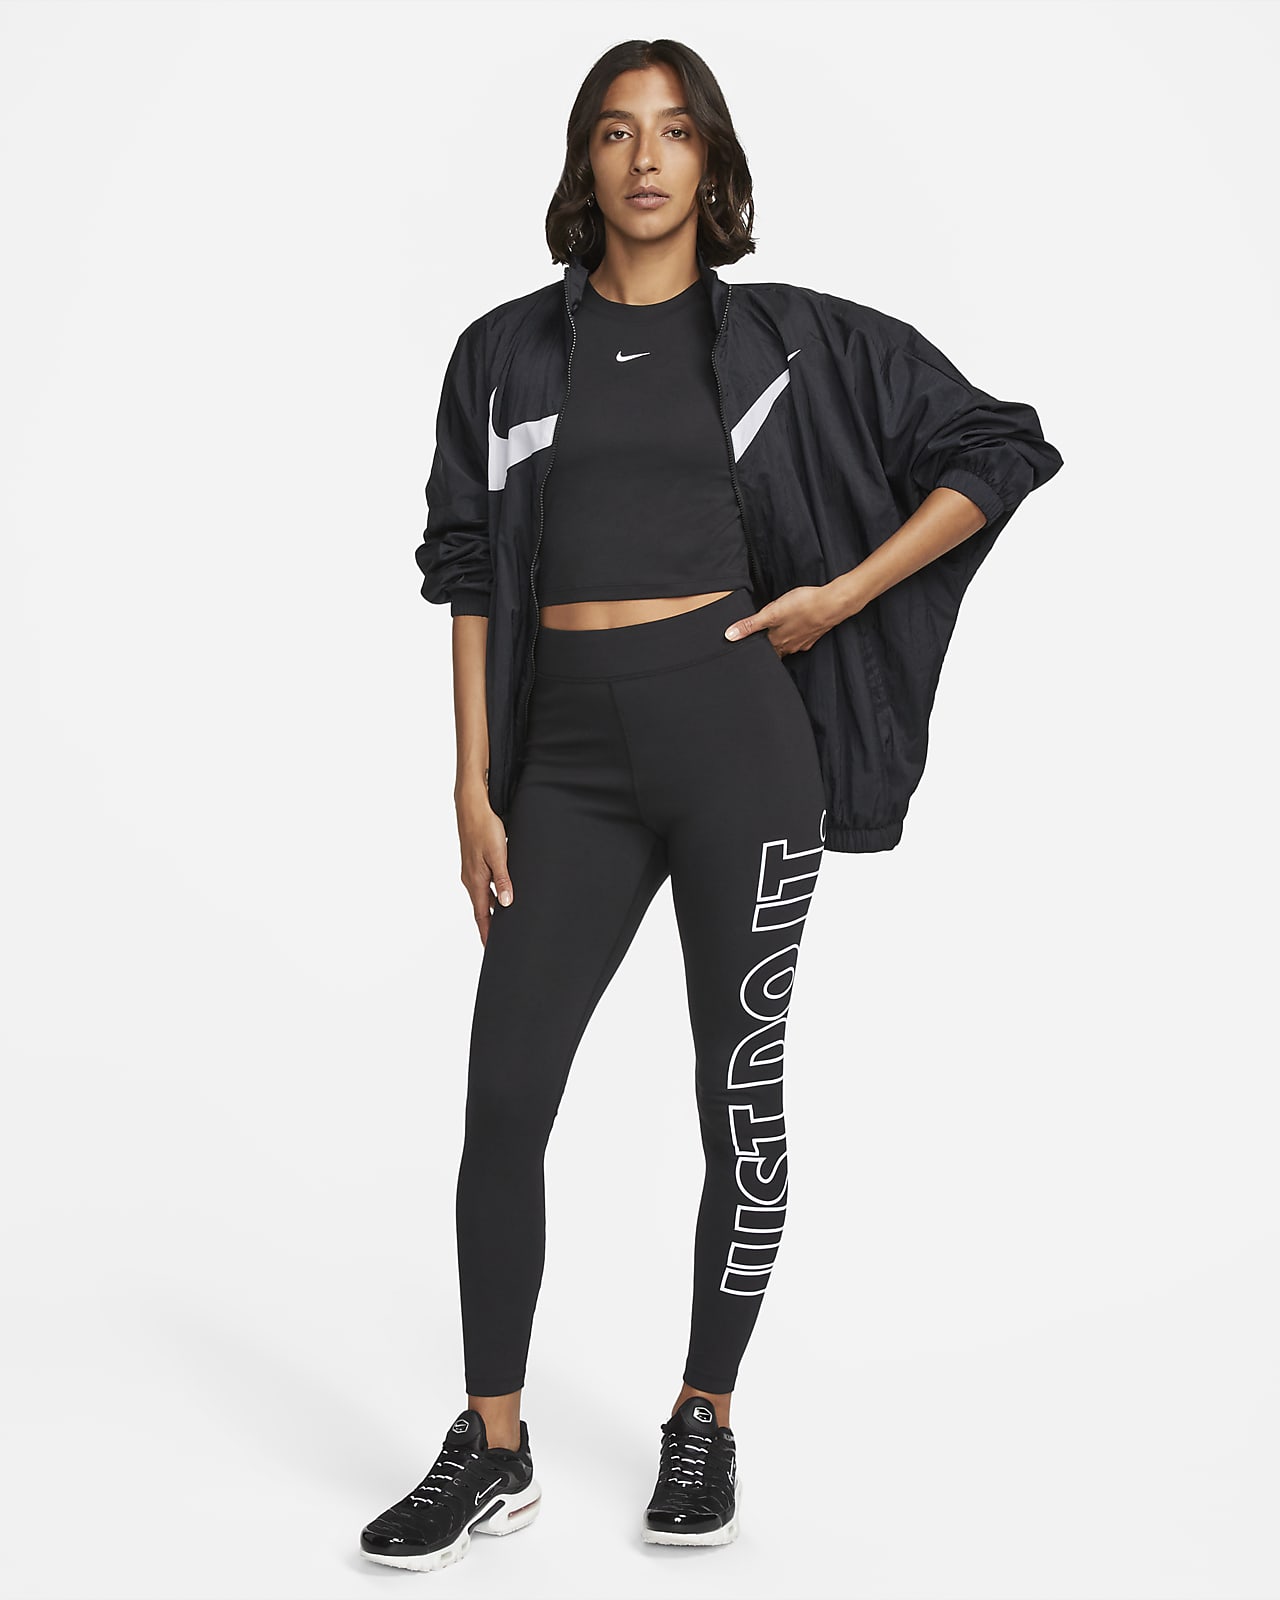 Damskie legginsy z wysokim stanem i grafiką Nike Sportswear Classics. Nike  PL